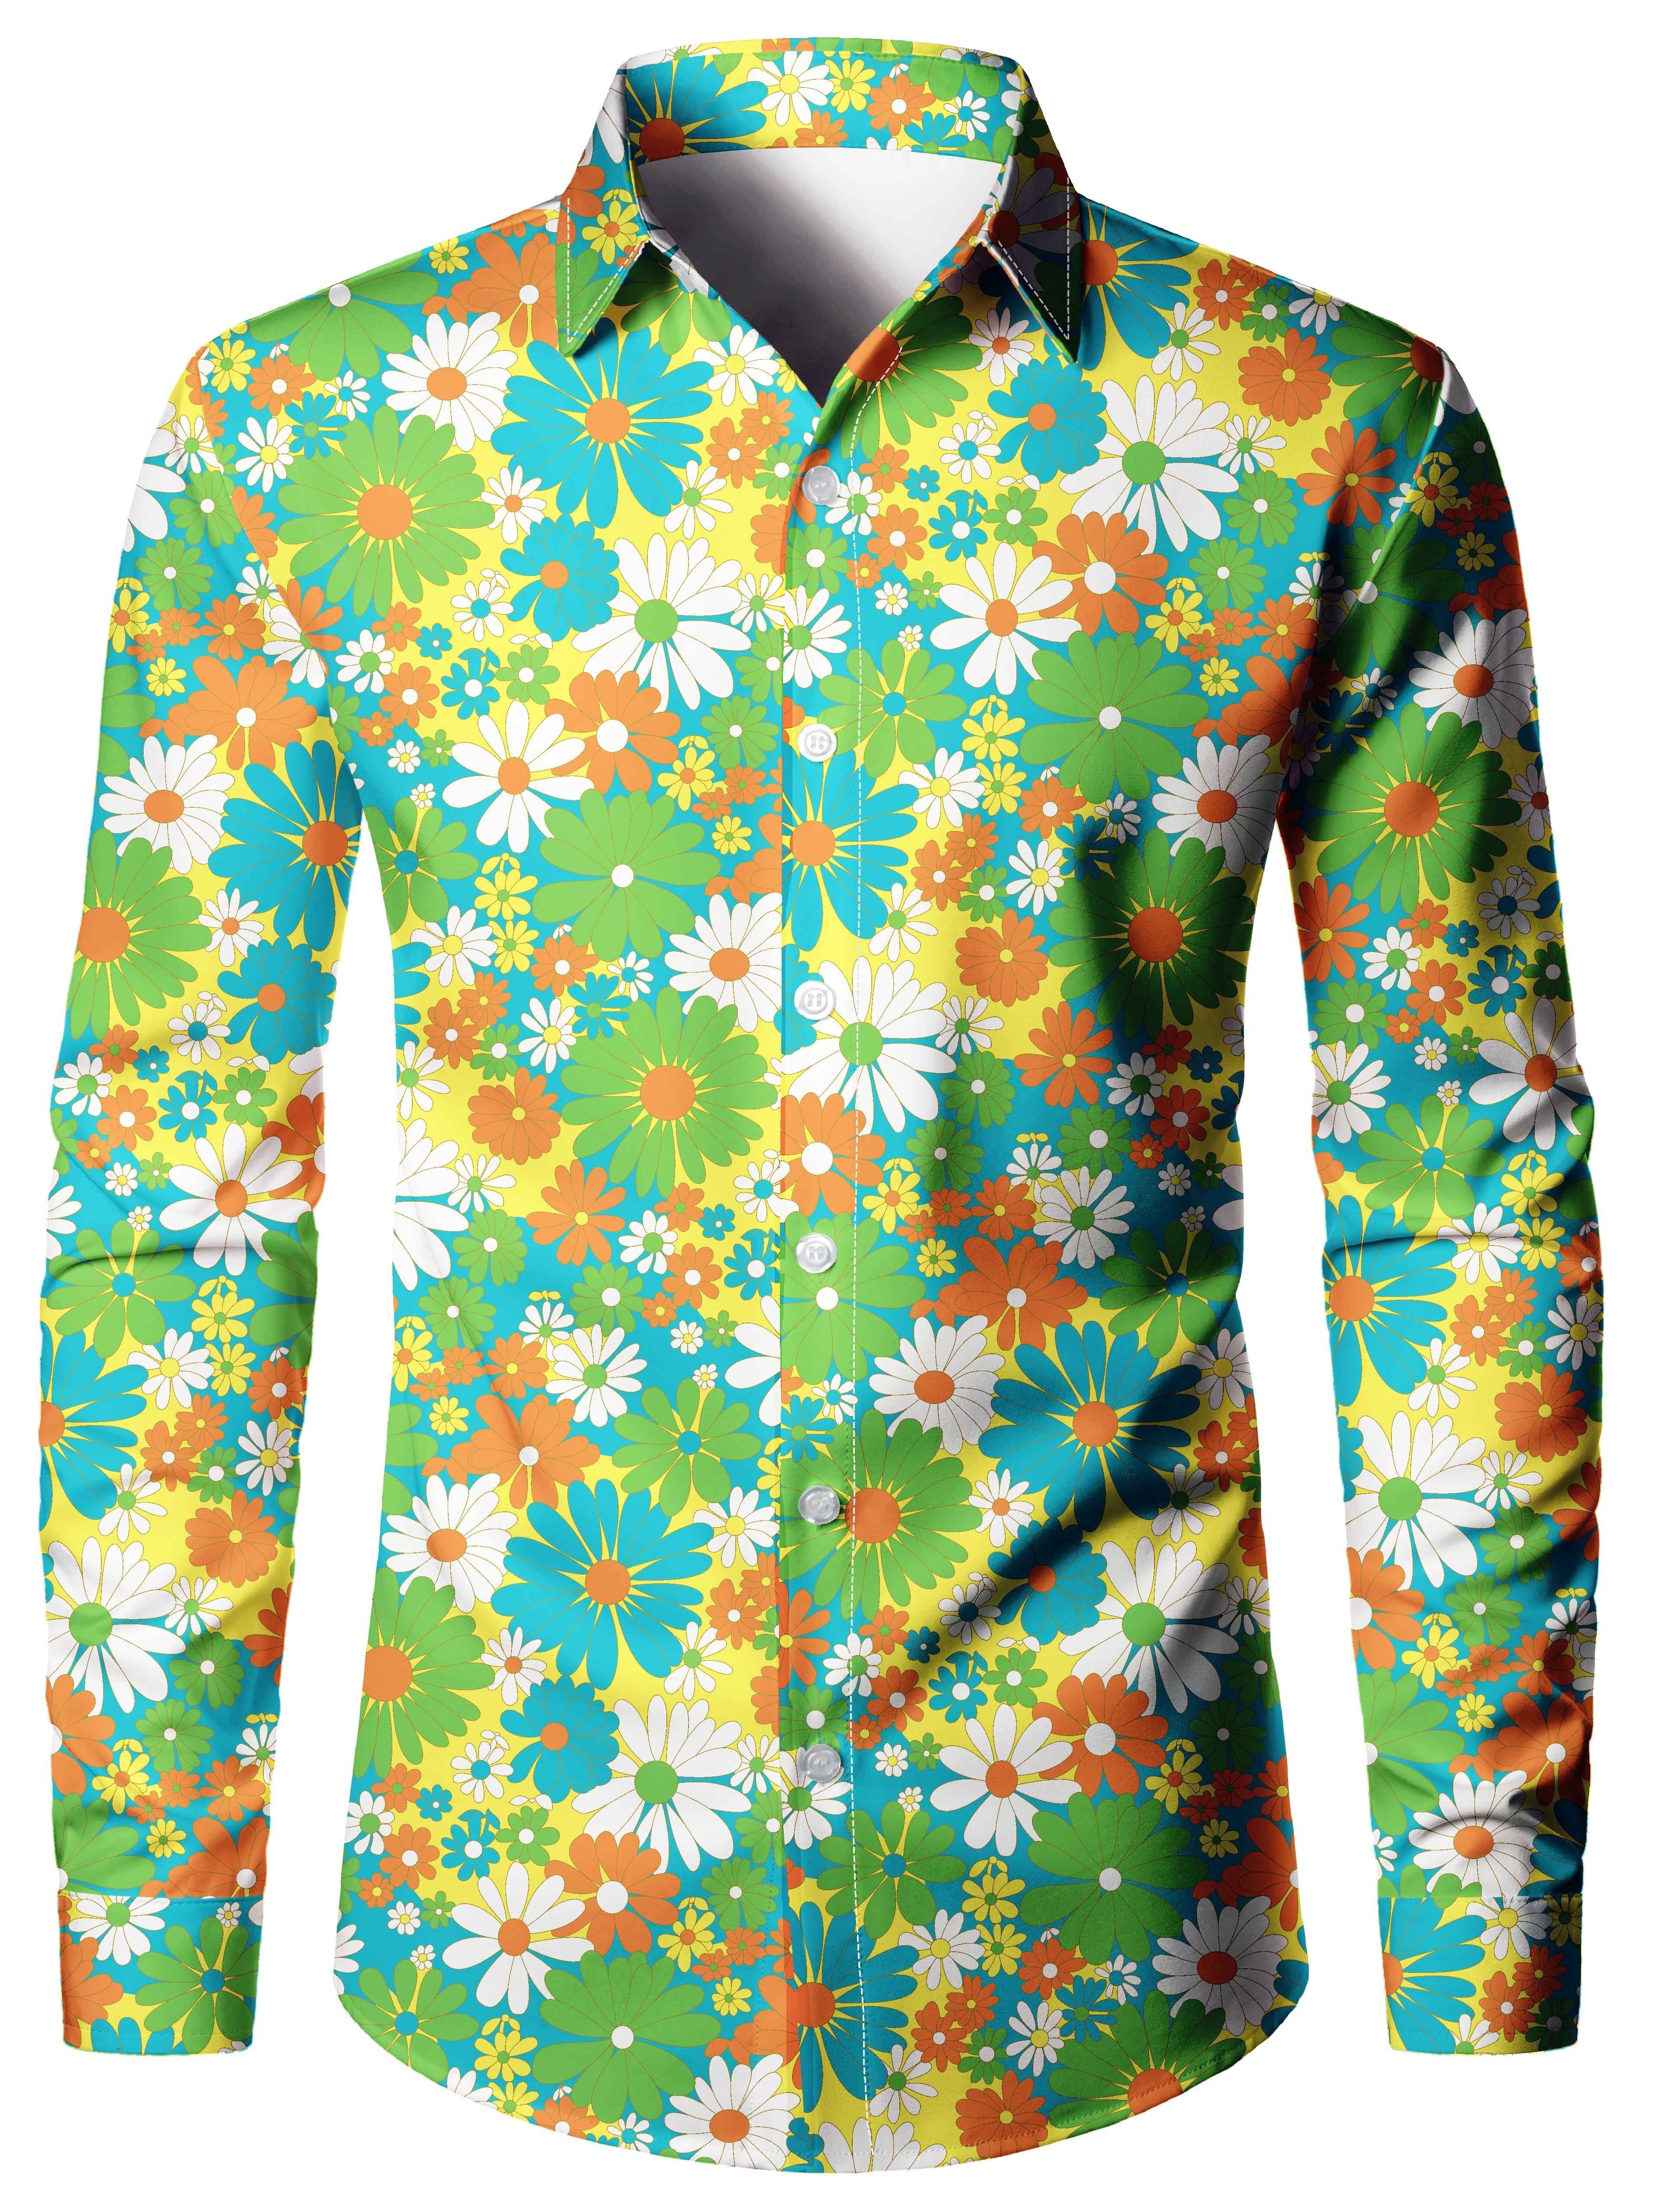 Men's Shirt Summer Trendy Hawaiian Shirt, Camp Collar Shirt Graphic Shirt  Aloha Shirt, Parrot Turndown Yellow Light Green Pink Red Blue 3D Print -  Trendy Aloha